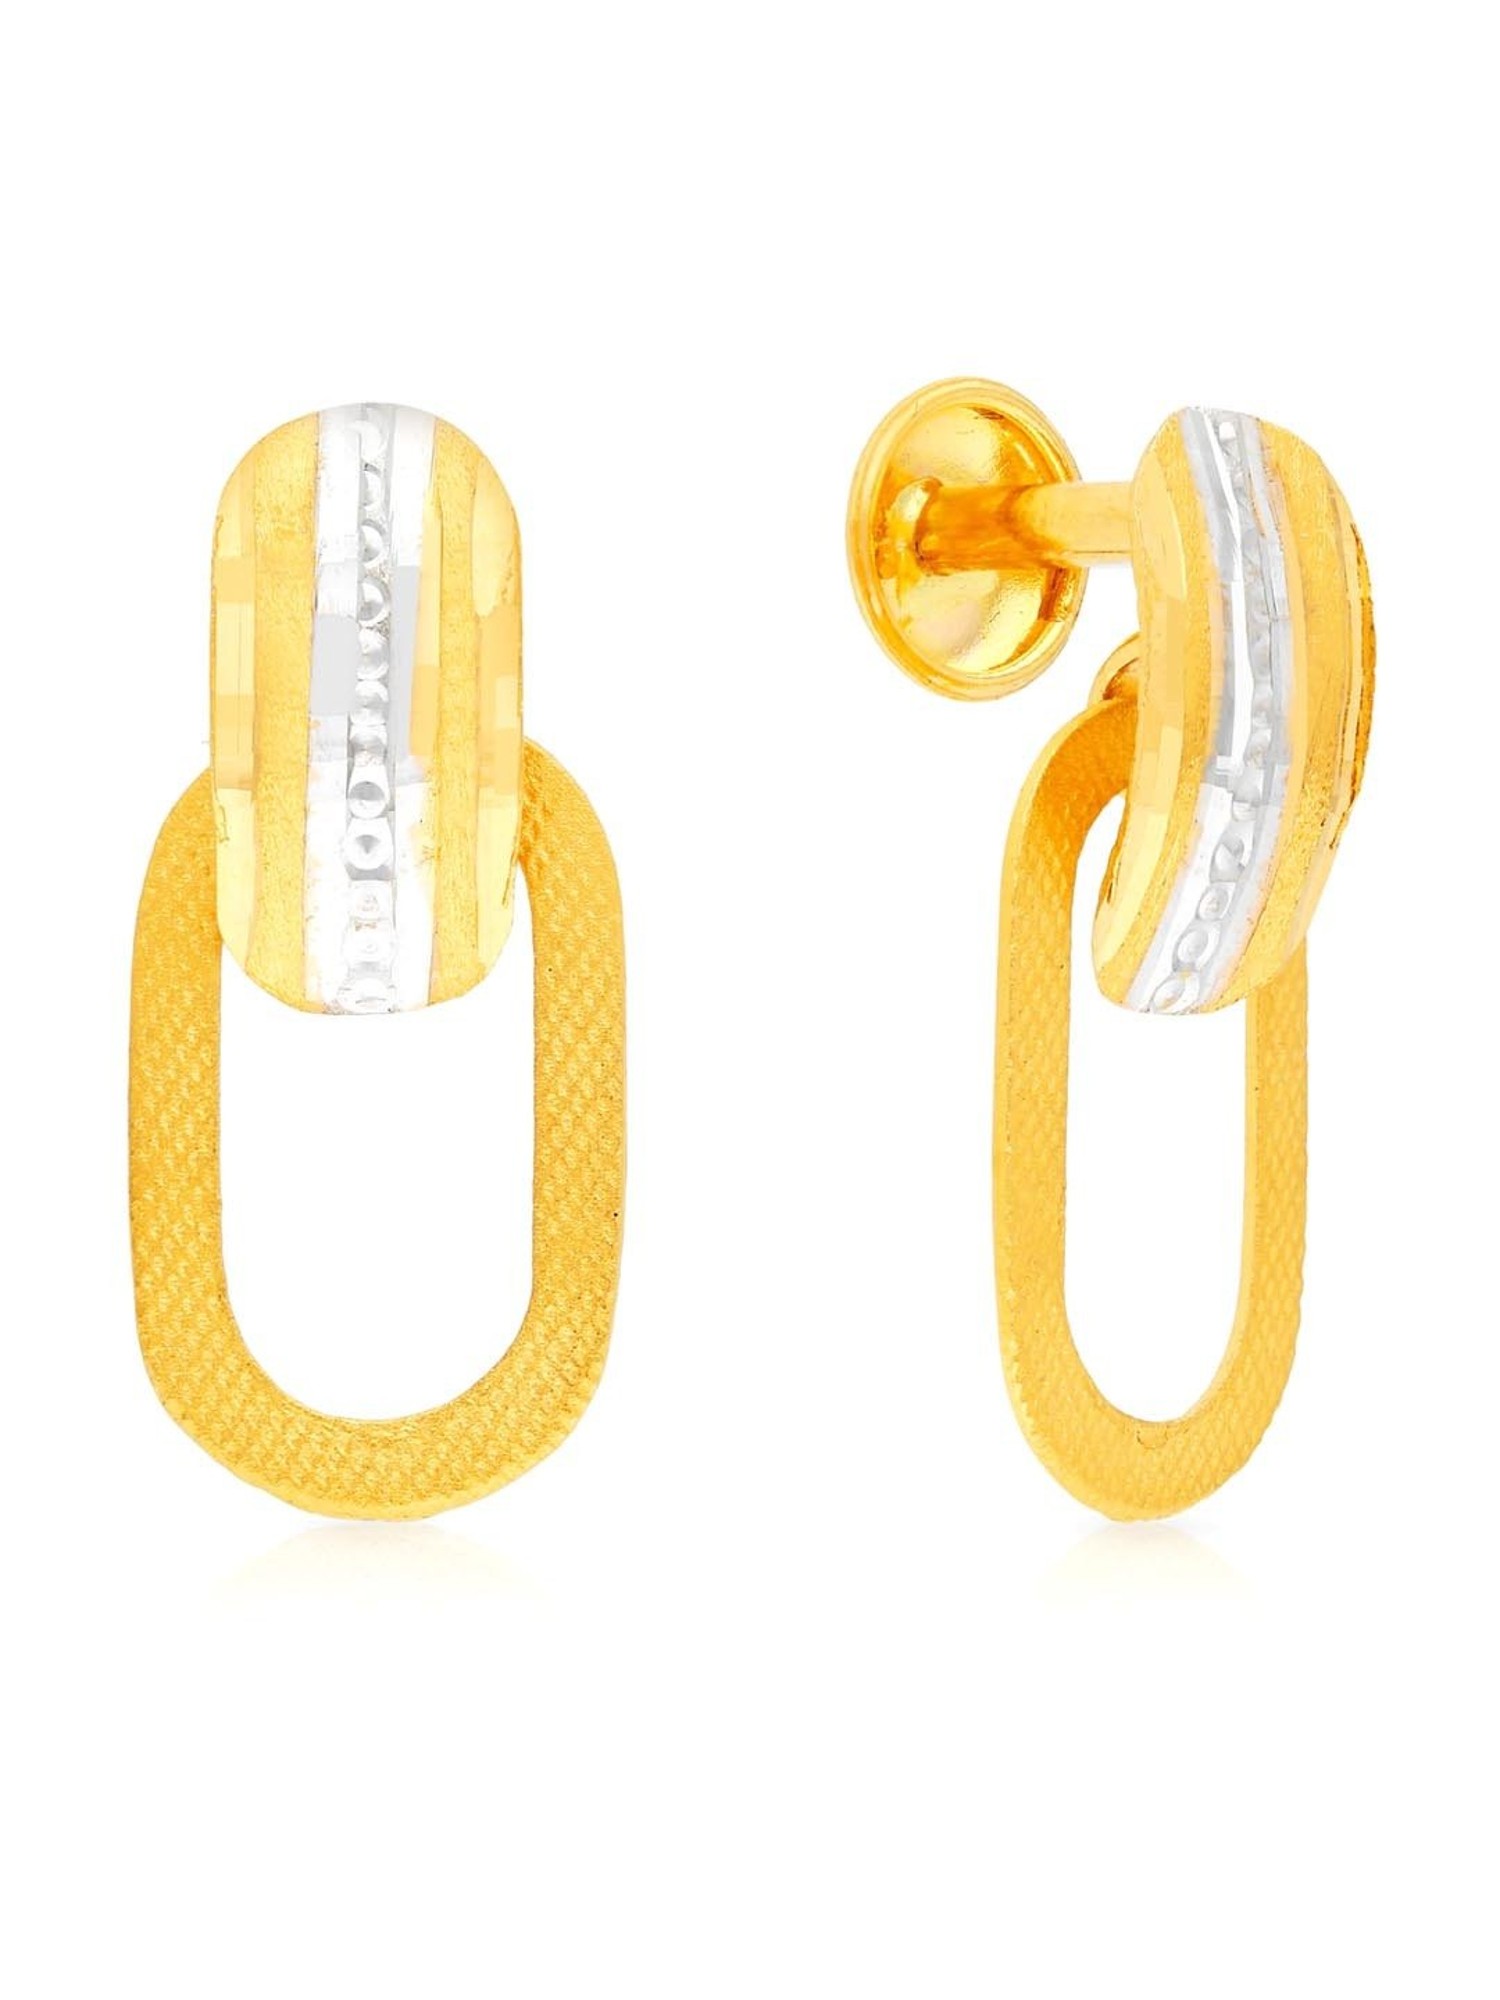 Leafy Peacock Gold Drop Earrings  Jewelry Online Shopping  Gold Studs   Earrings